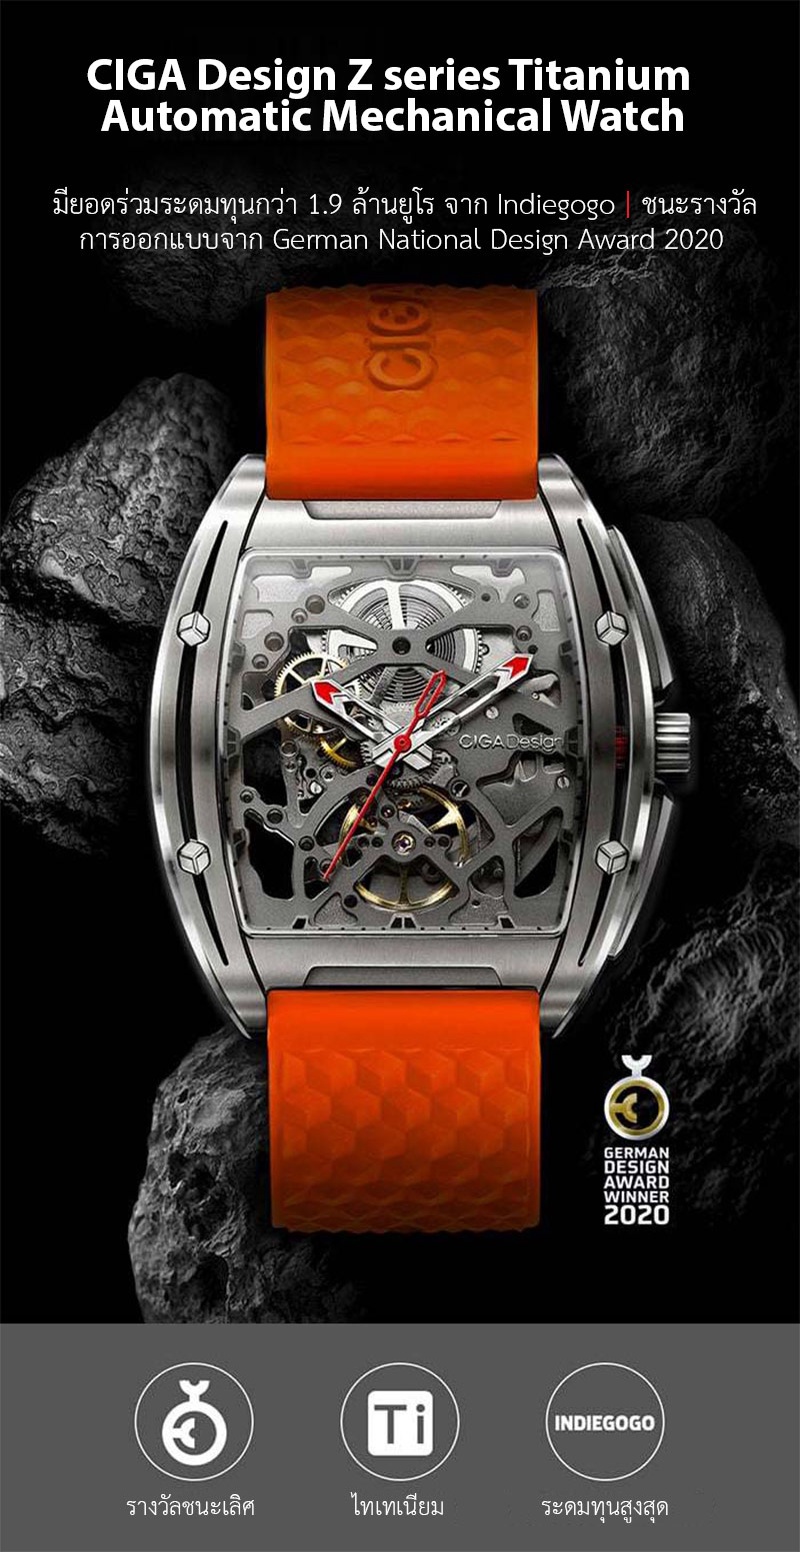 ภาพประกอบคำอธิบาย CIGA Design Z series Titanium Automatic Mechanical Watch - นาฬิกาซิก้า ดีไซน์ รุ่น Z Series Titanium